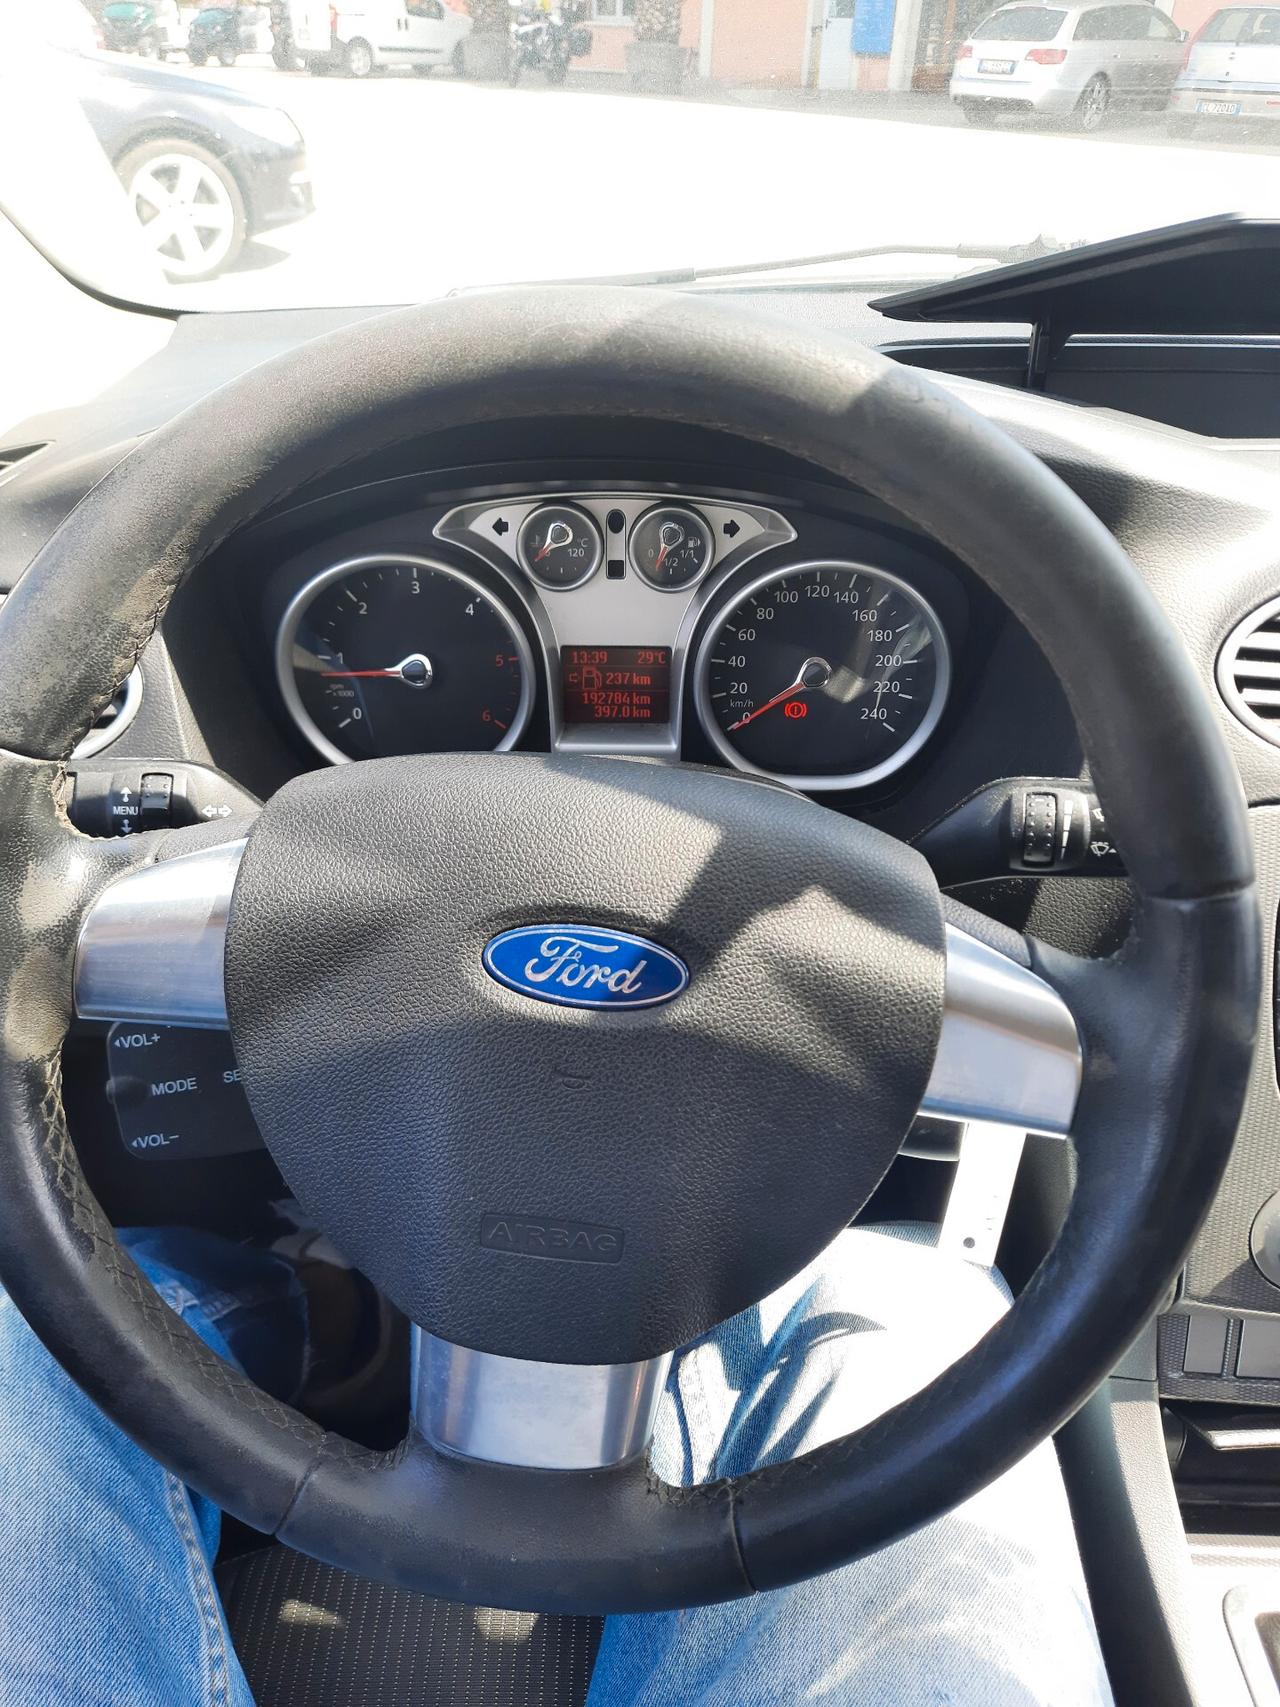 Ford Focus Focus 1.6 TDCi (90CV) SW